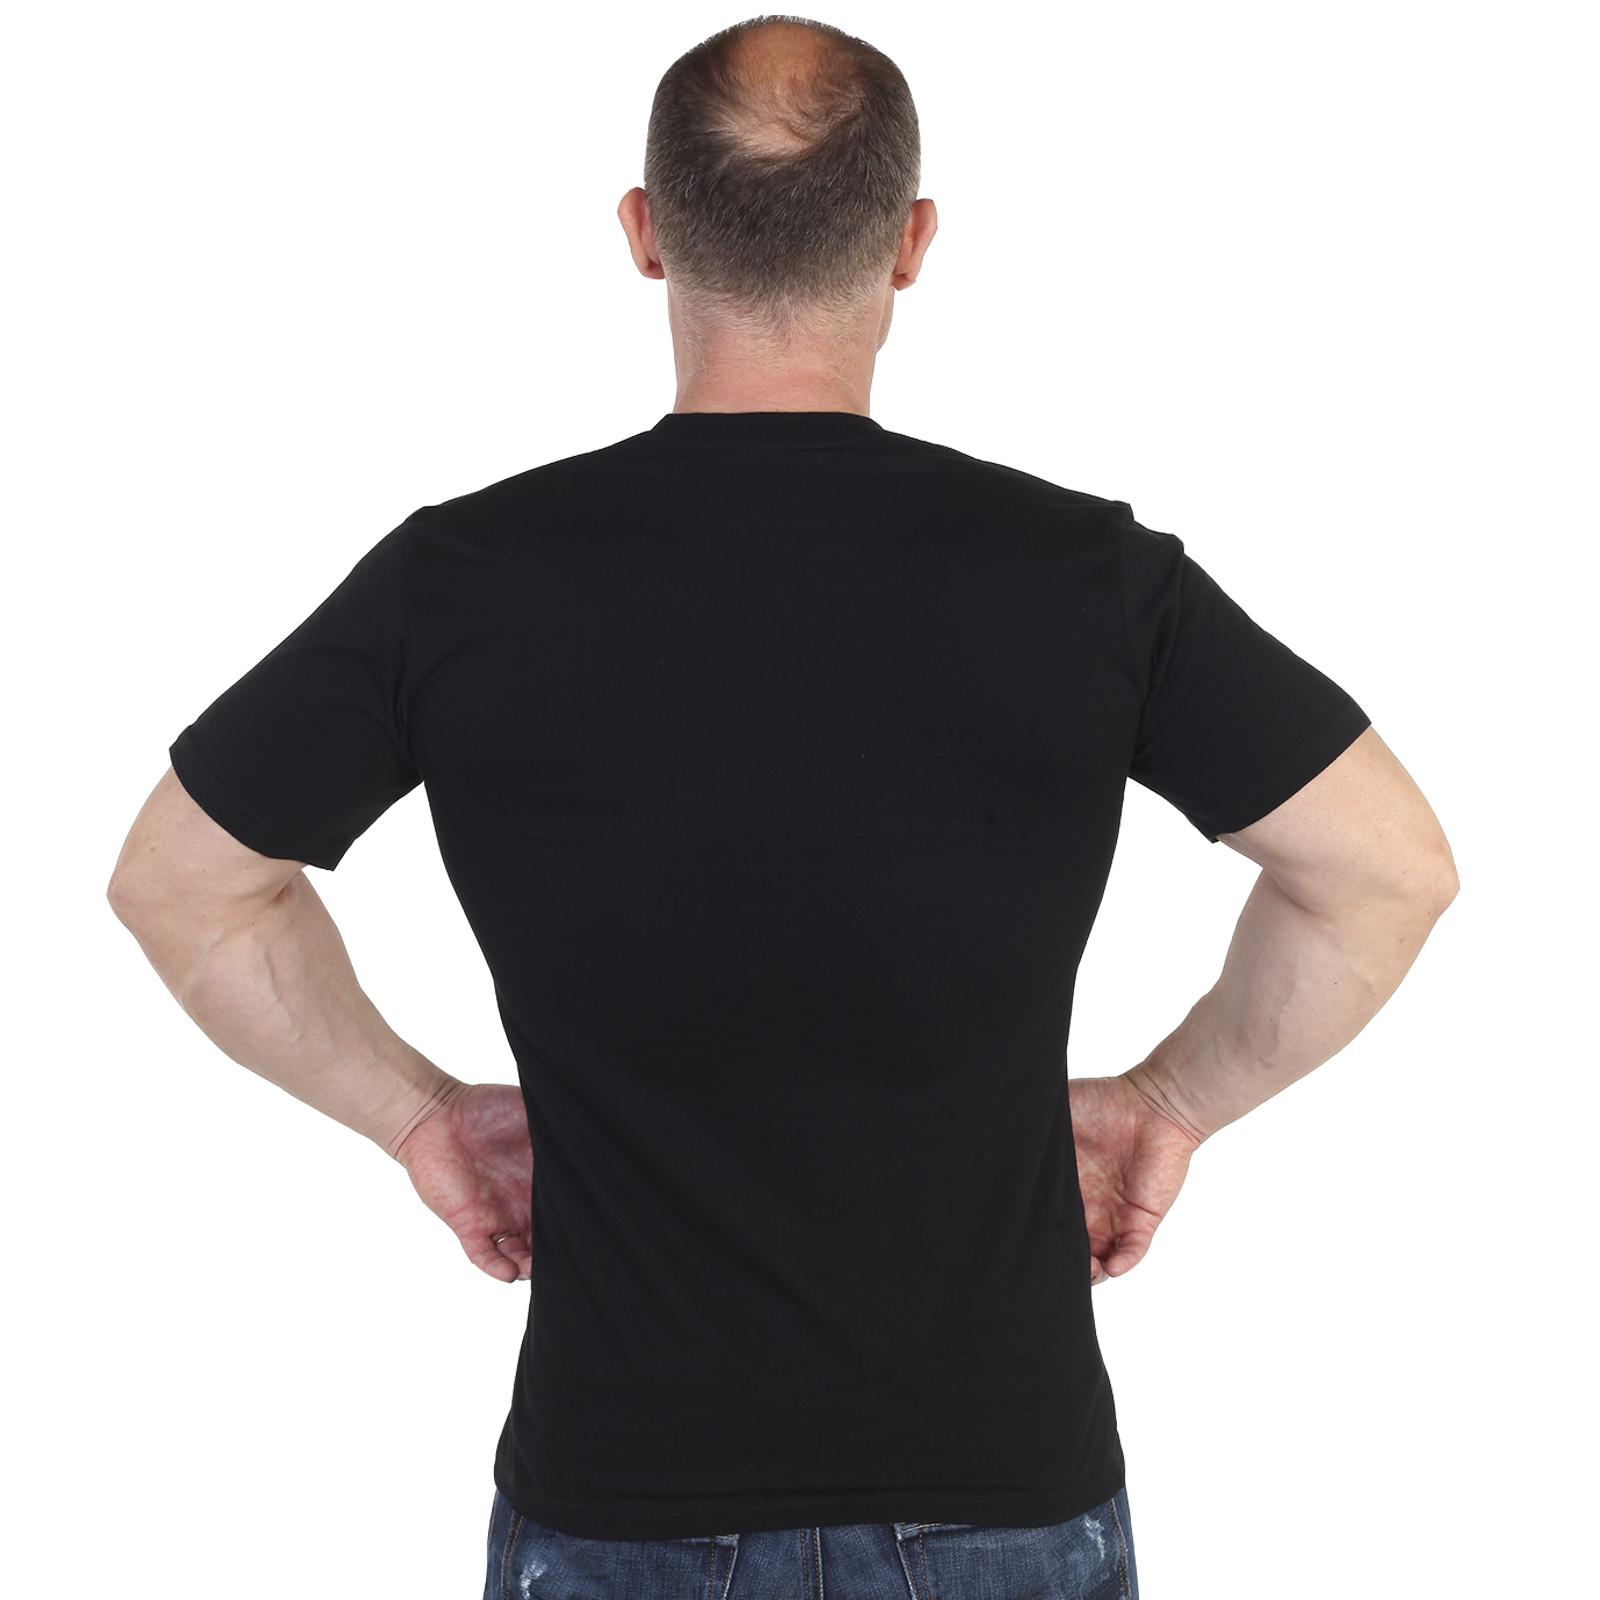 Купить крутую черную футболку с термонаклейкой 177 Полк Морской Пехоты онлайн